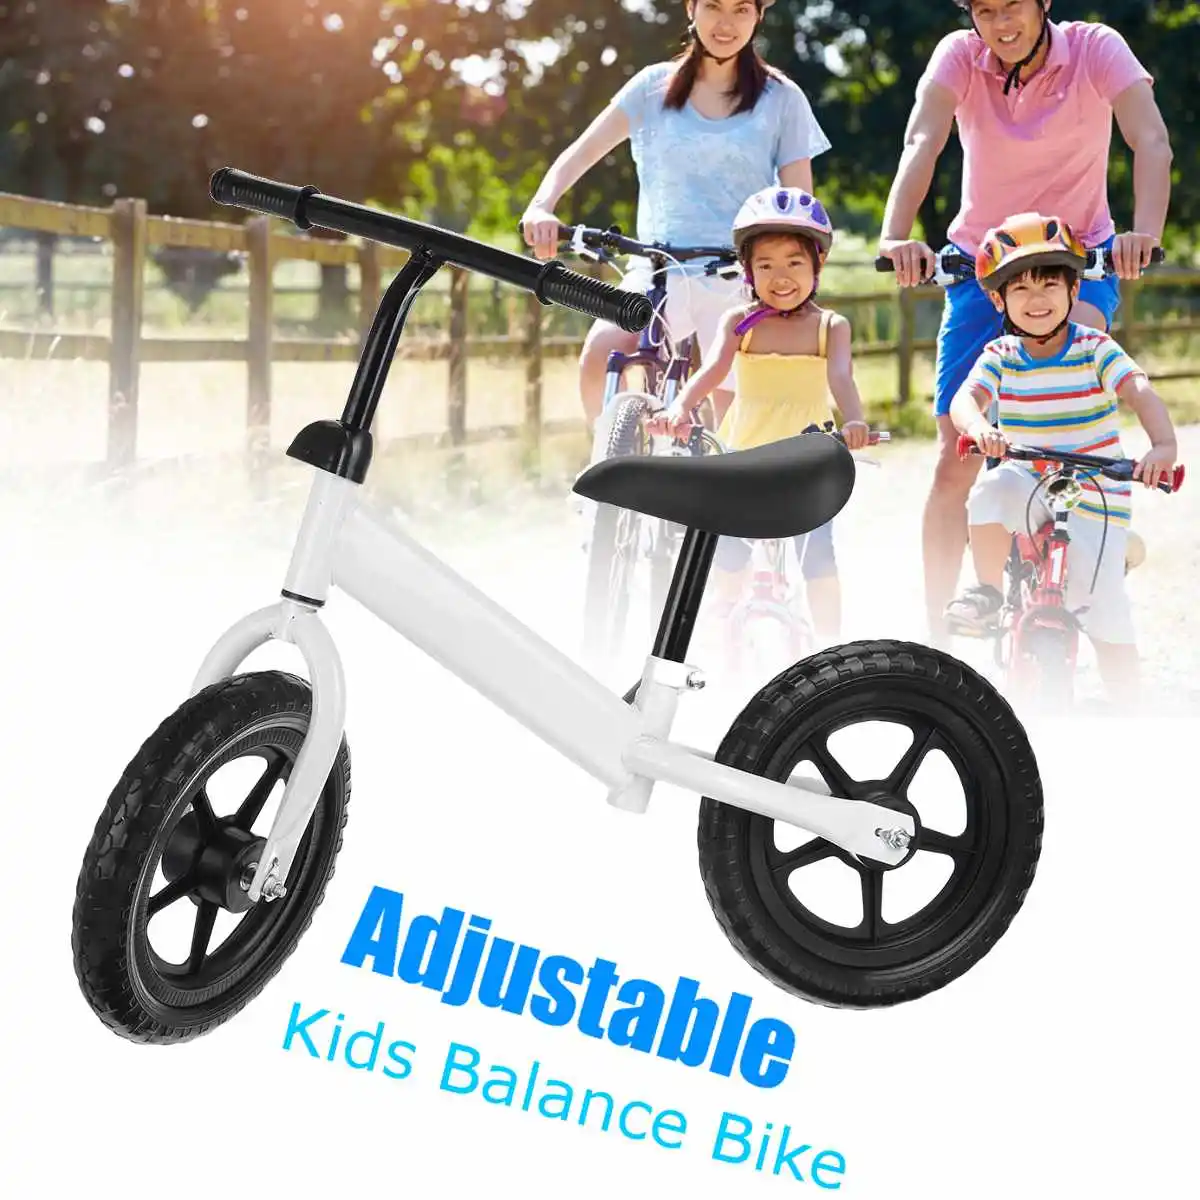 Descuento Bicicleta de equilibrio ultraligera de 12 pulgadas para niños, de 1 a 3 años, para aprender a montar, deportes de equilibrio OnwZe3VRgnD